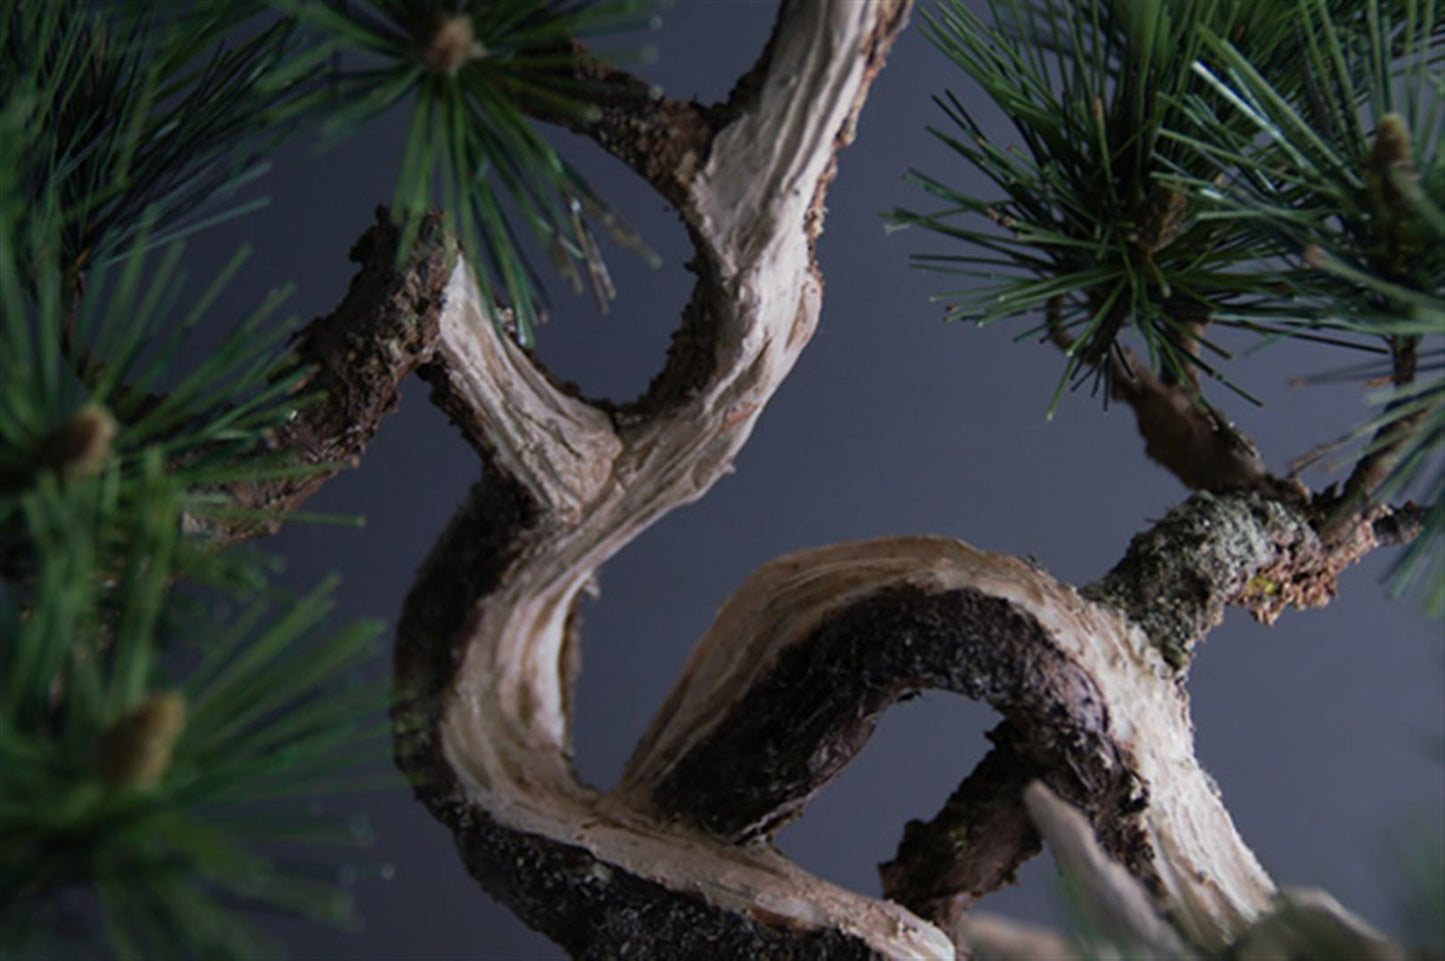 Kuromatsu Black Pine bonsai